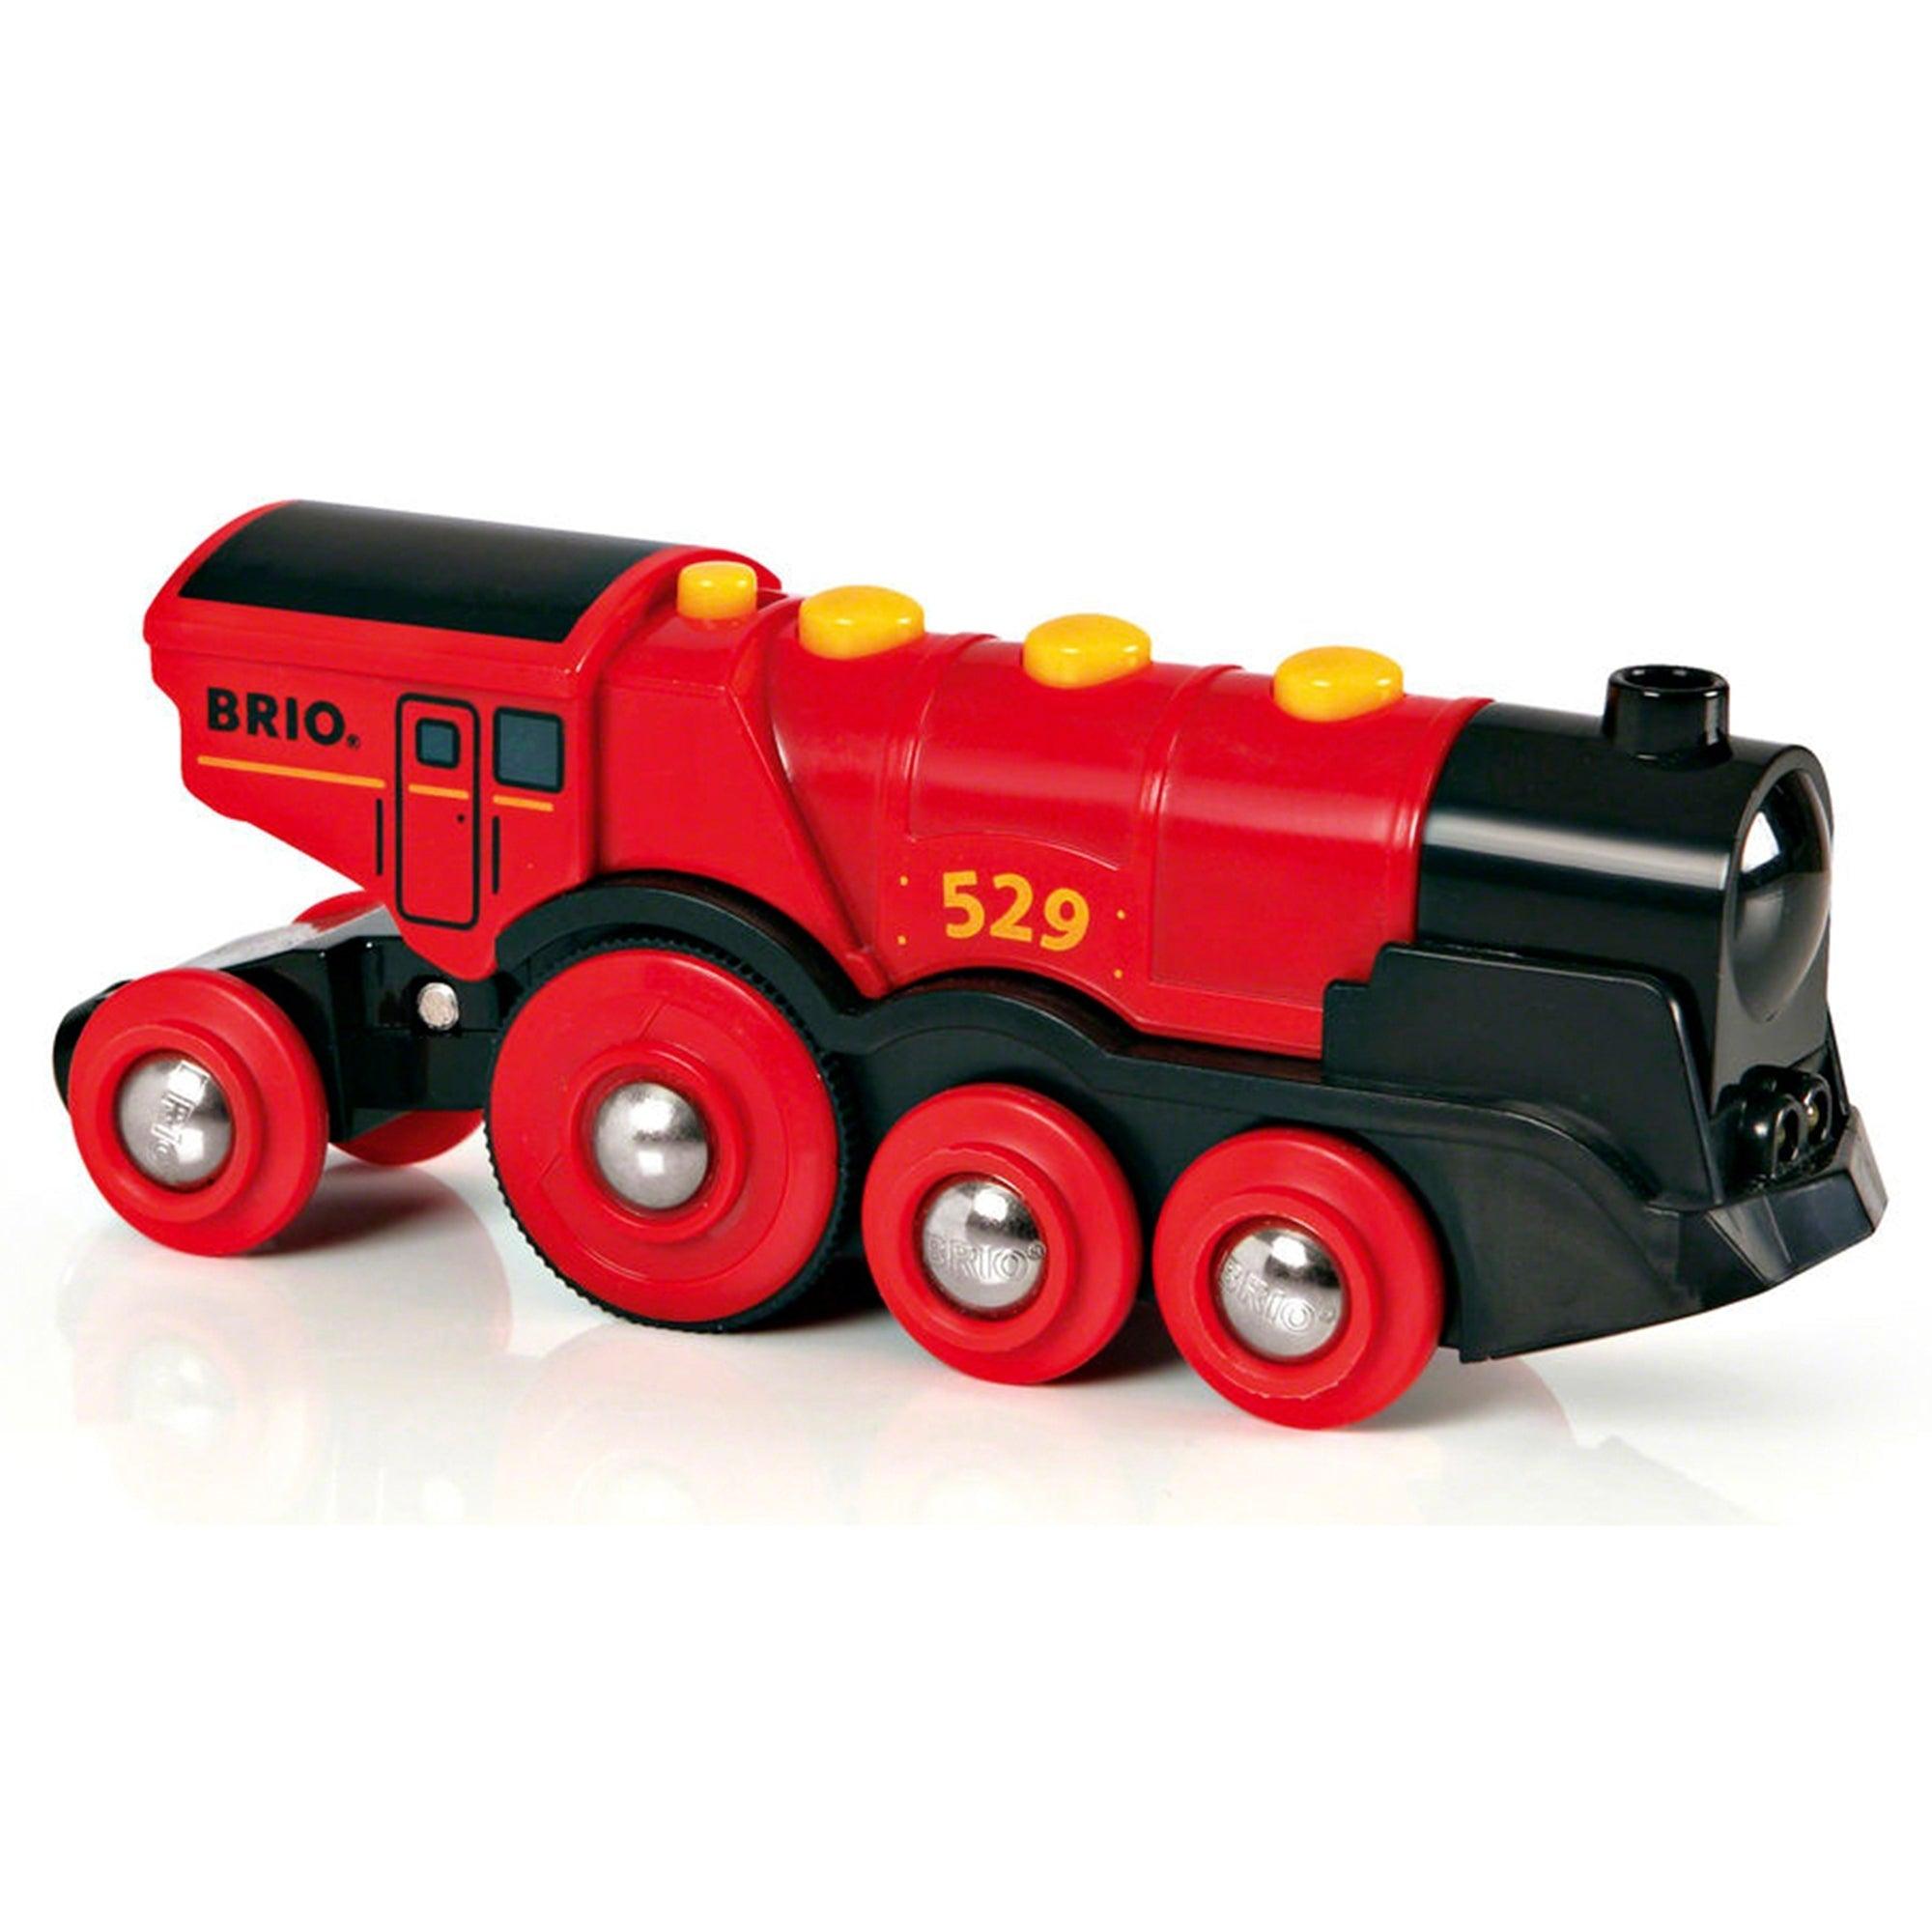 BRIO: czerwona lokomotywa na baterie Mighty Red Action Locomotive World - Noski Noski